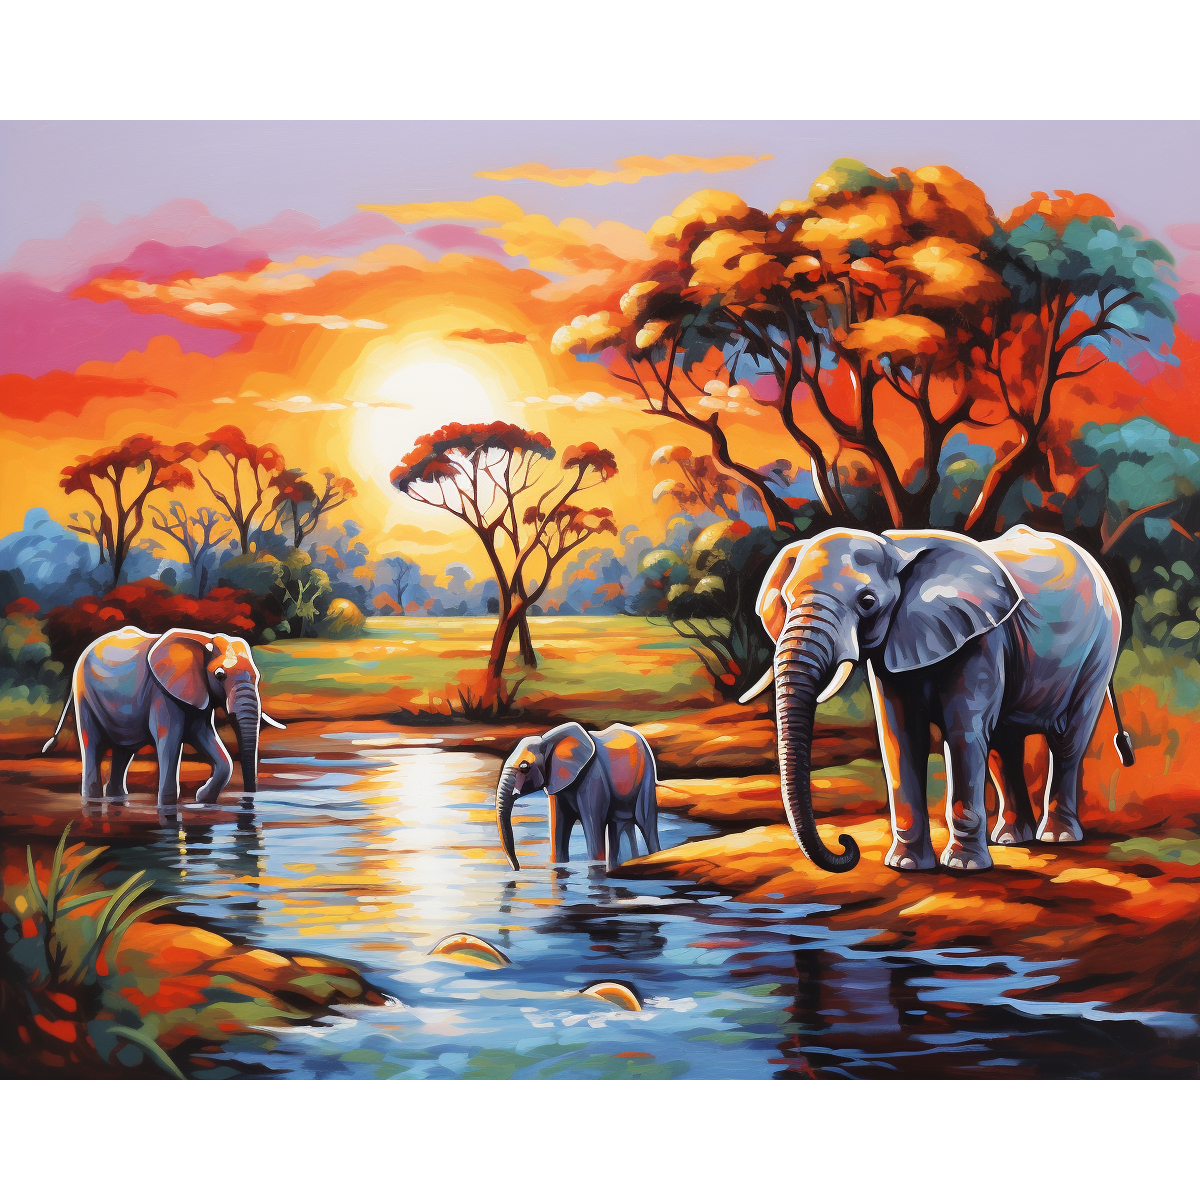 Mosaico de elefantes